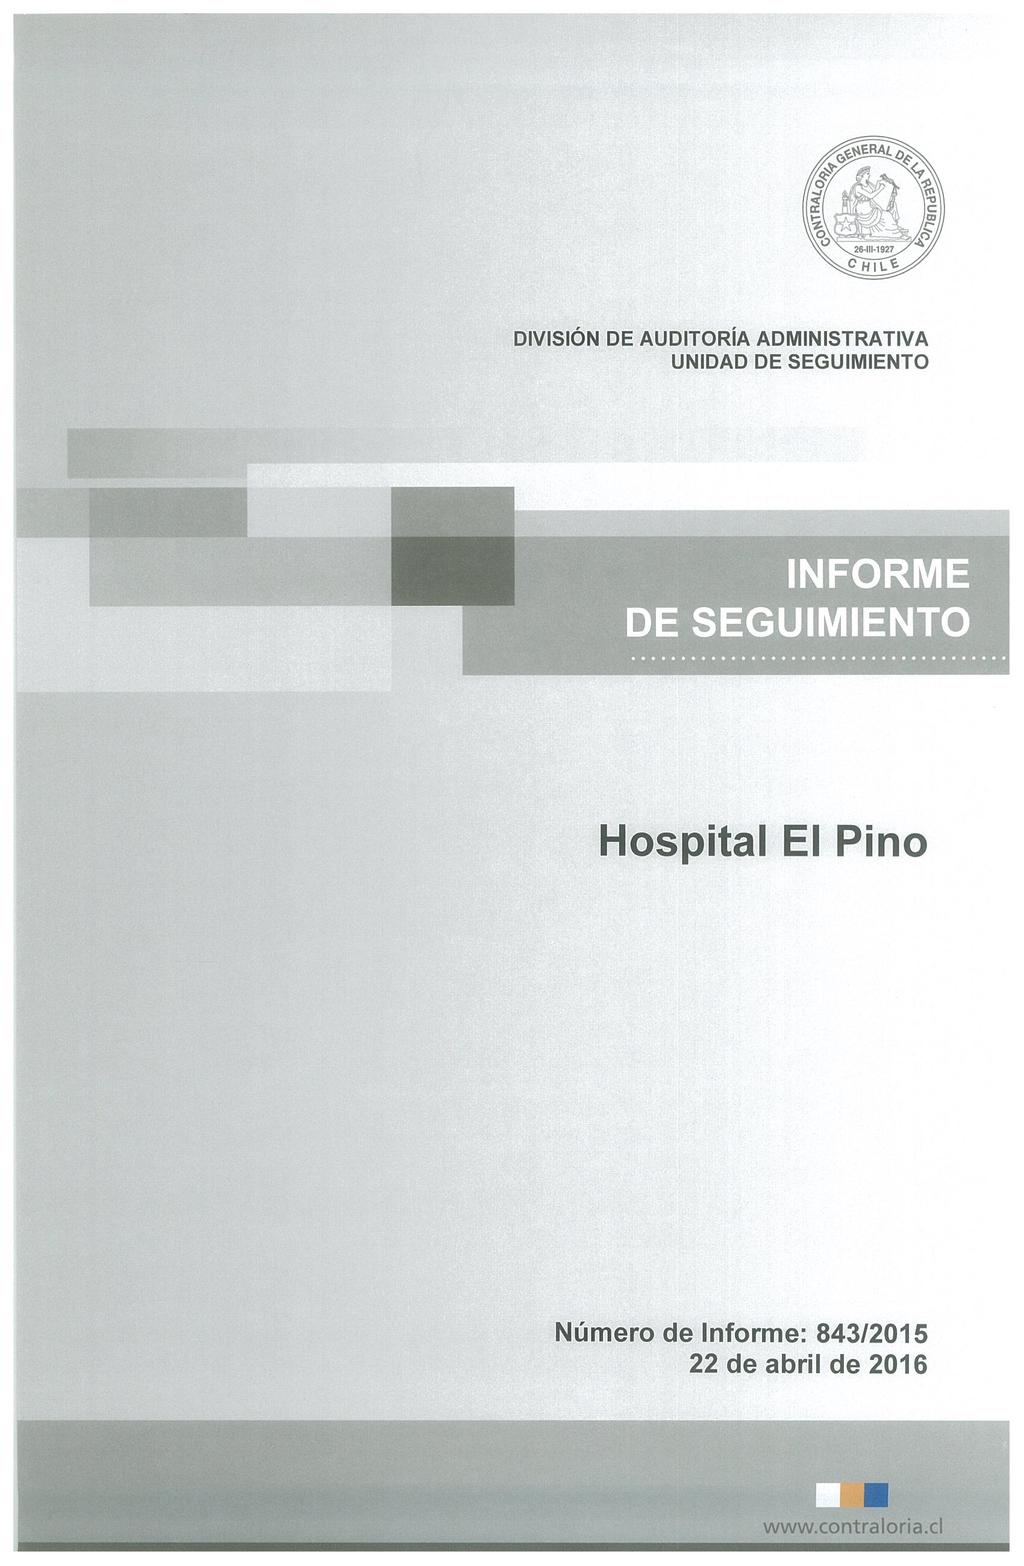 DIVISIÓN DE AUDITORIA ADMINISTRATIVA INFORME DE SEGUIMIENTO Hospital El